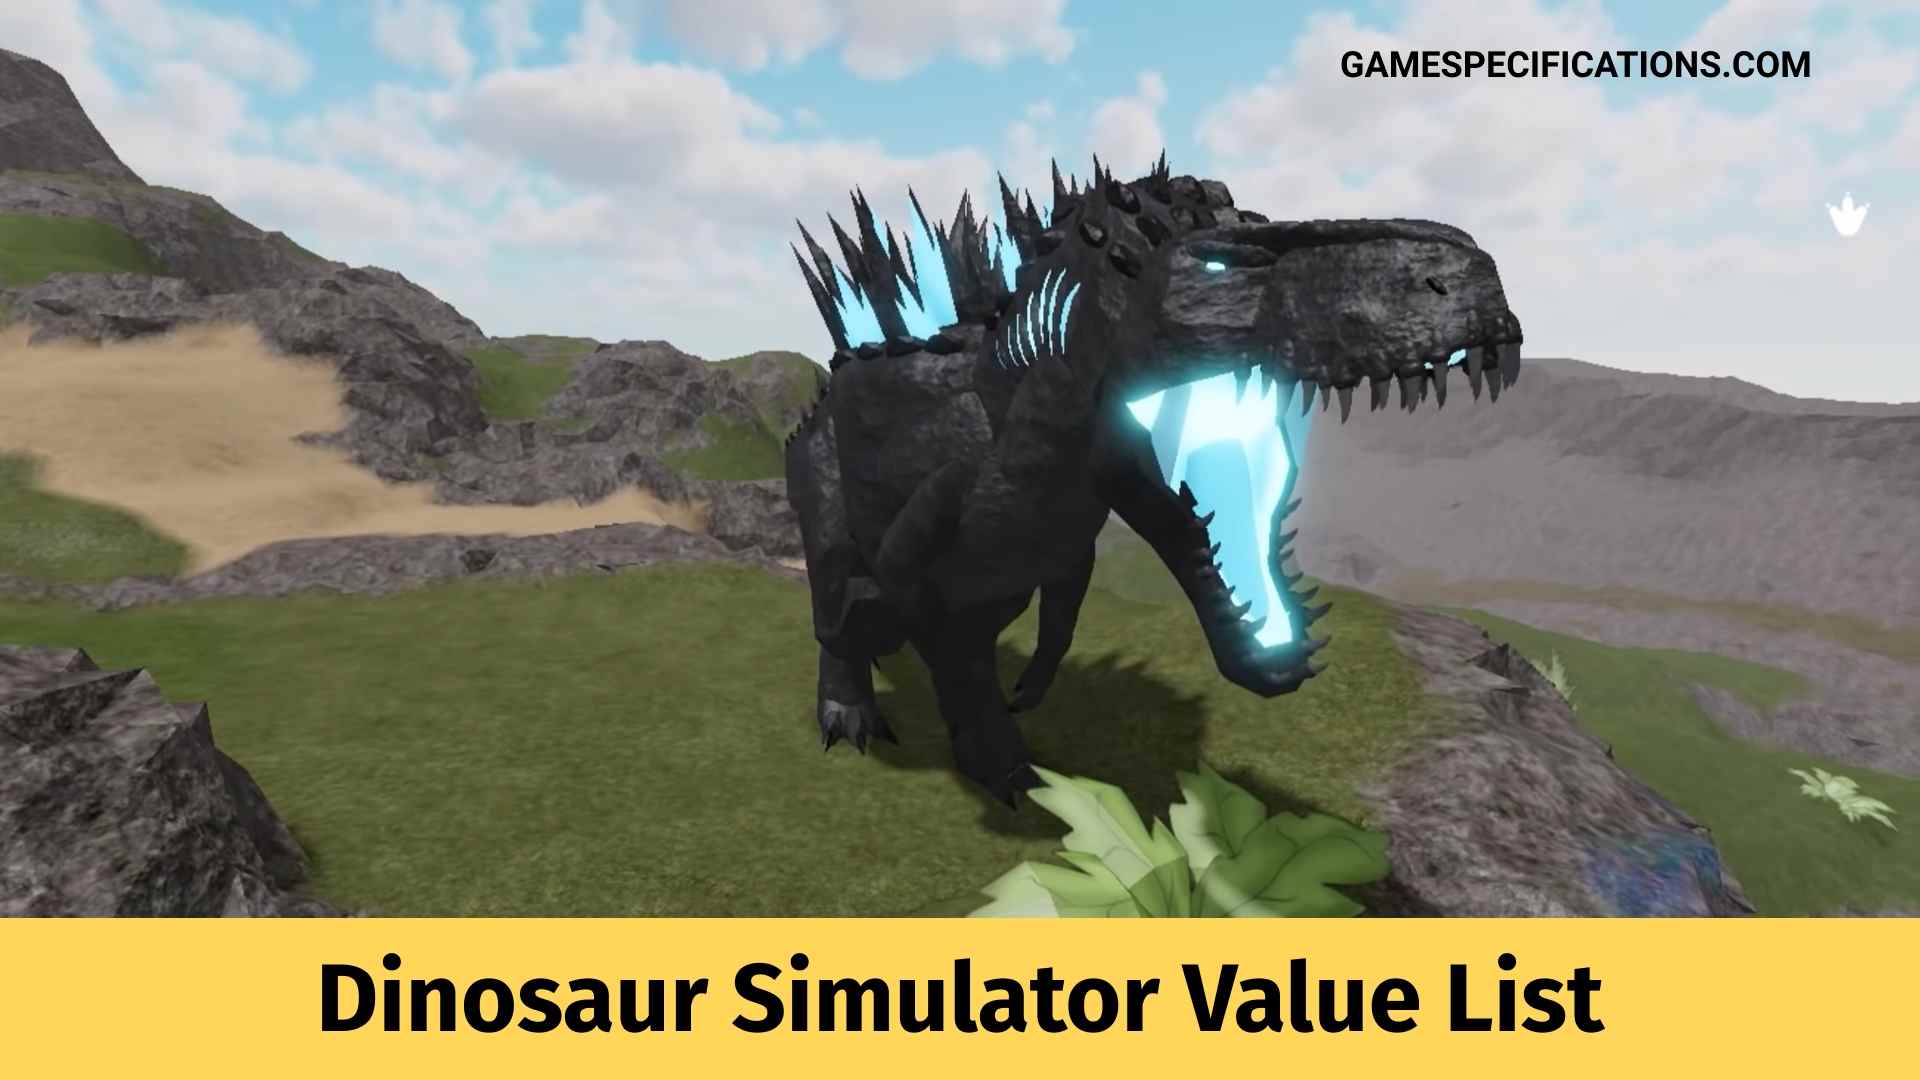 Roblox Dinosaur Simulator Value List For All Tiers 2021 Game Specifications - roblox dinosaur simulator movie spinosaurus